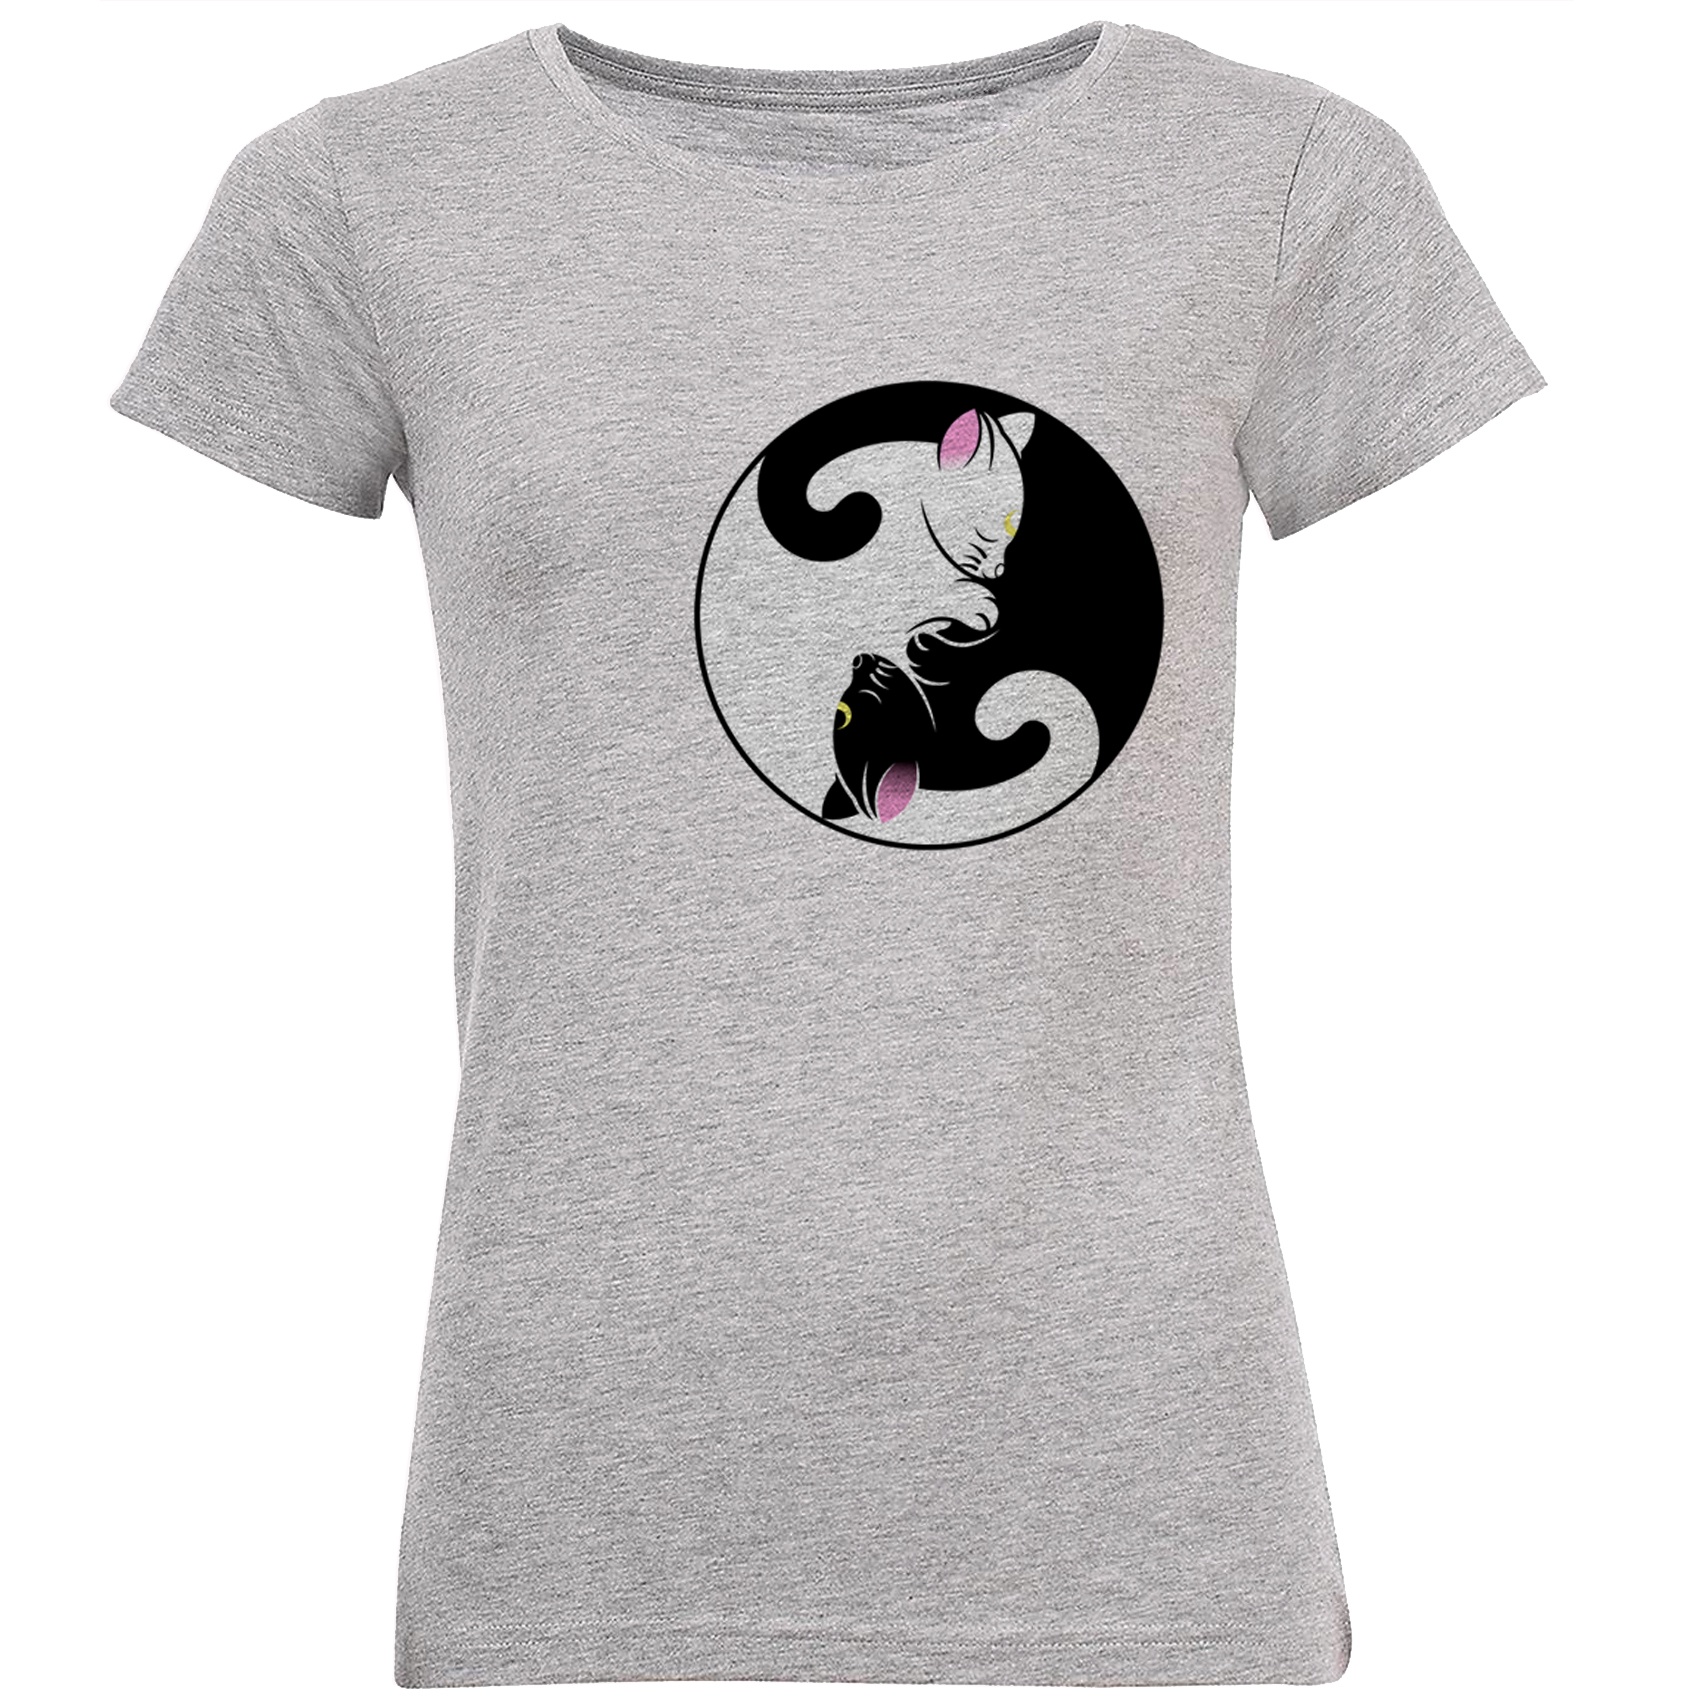 تی شرت زنانه طرح گربه های  سیاه و سفید کد B166